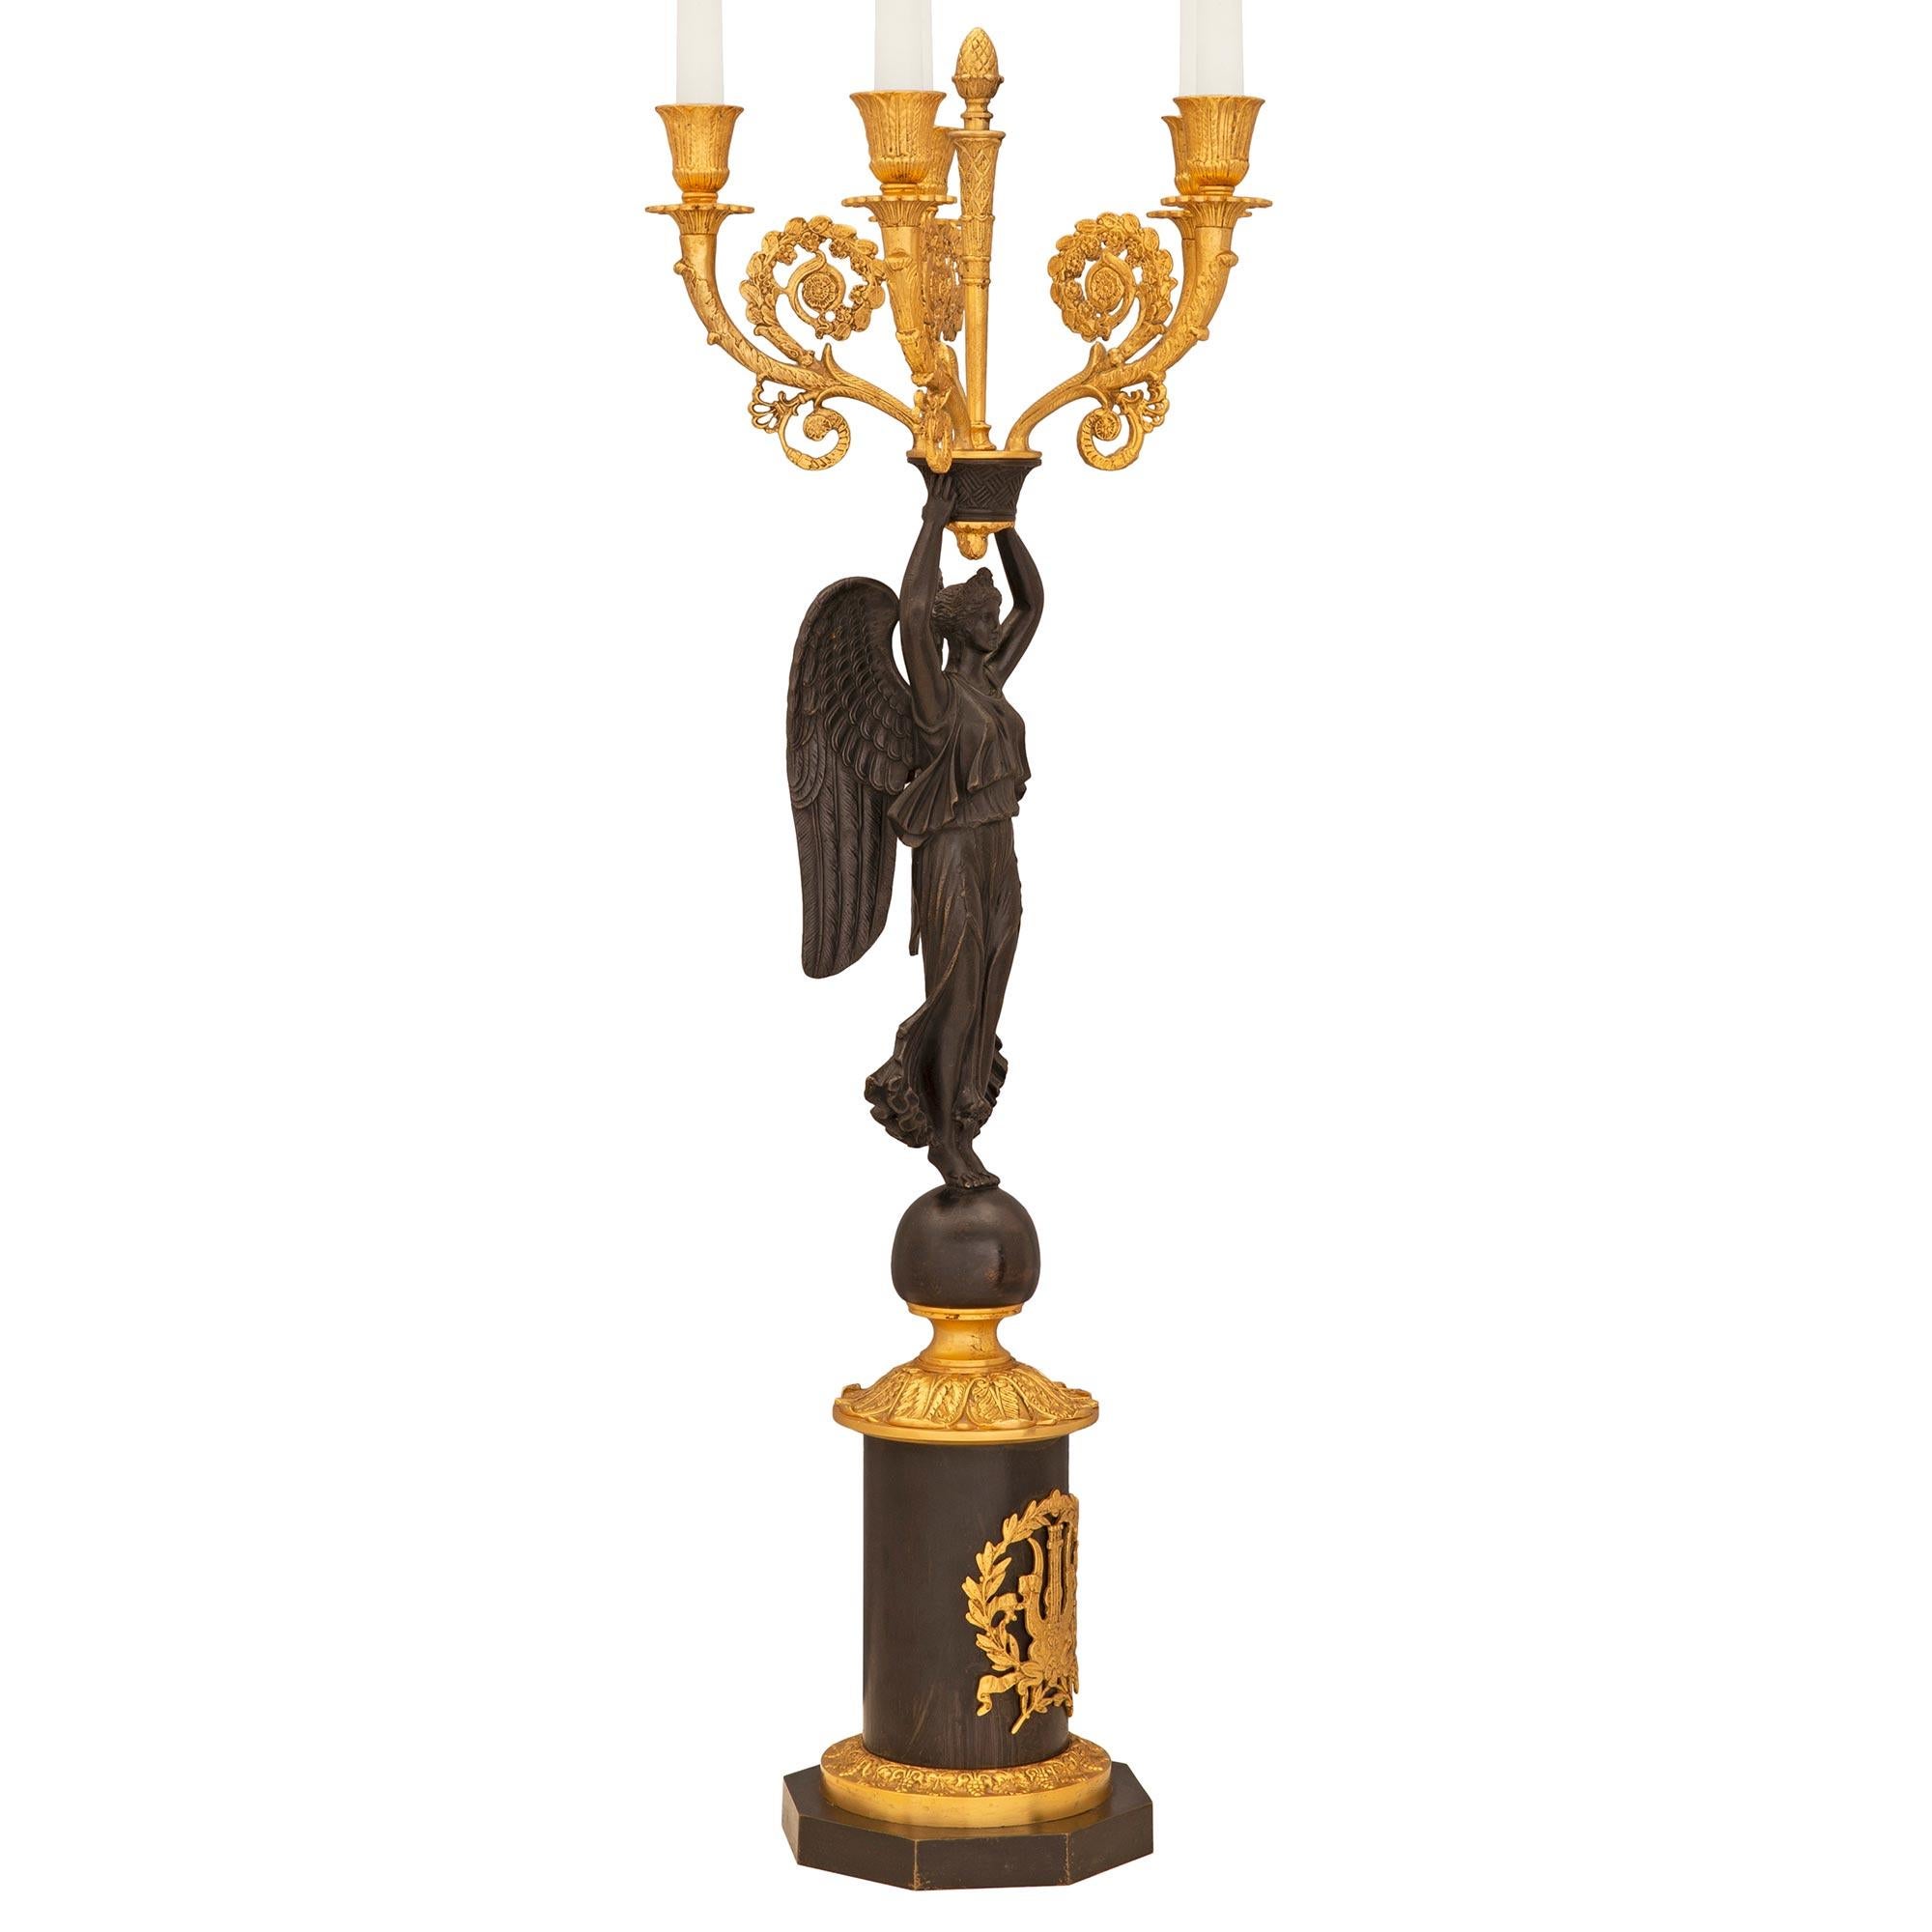 Une très belle et grande paire de candélabres à cinq bras de style néo-classique français du 19ème siècle. La paire en bronze doré et patiné repose sur une base circulaire avec un décor en bronze doré ciselé au centre, sous une figure féminine ailée